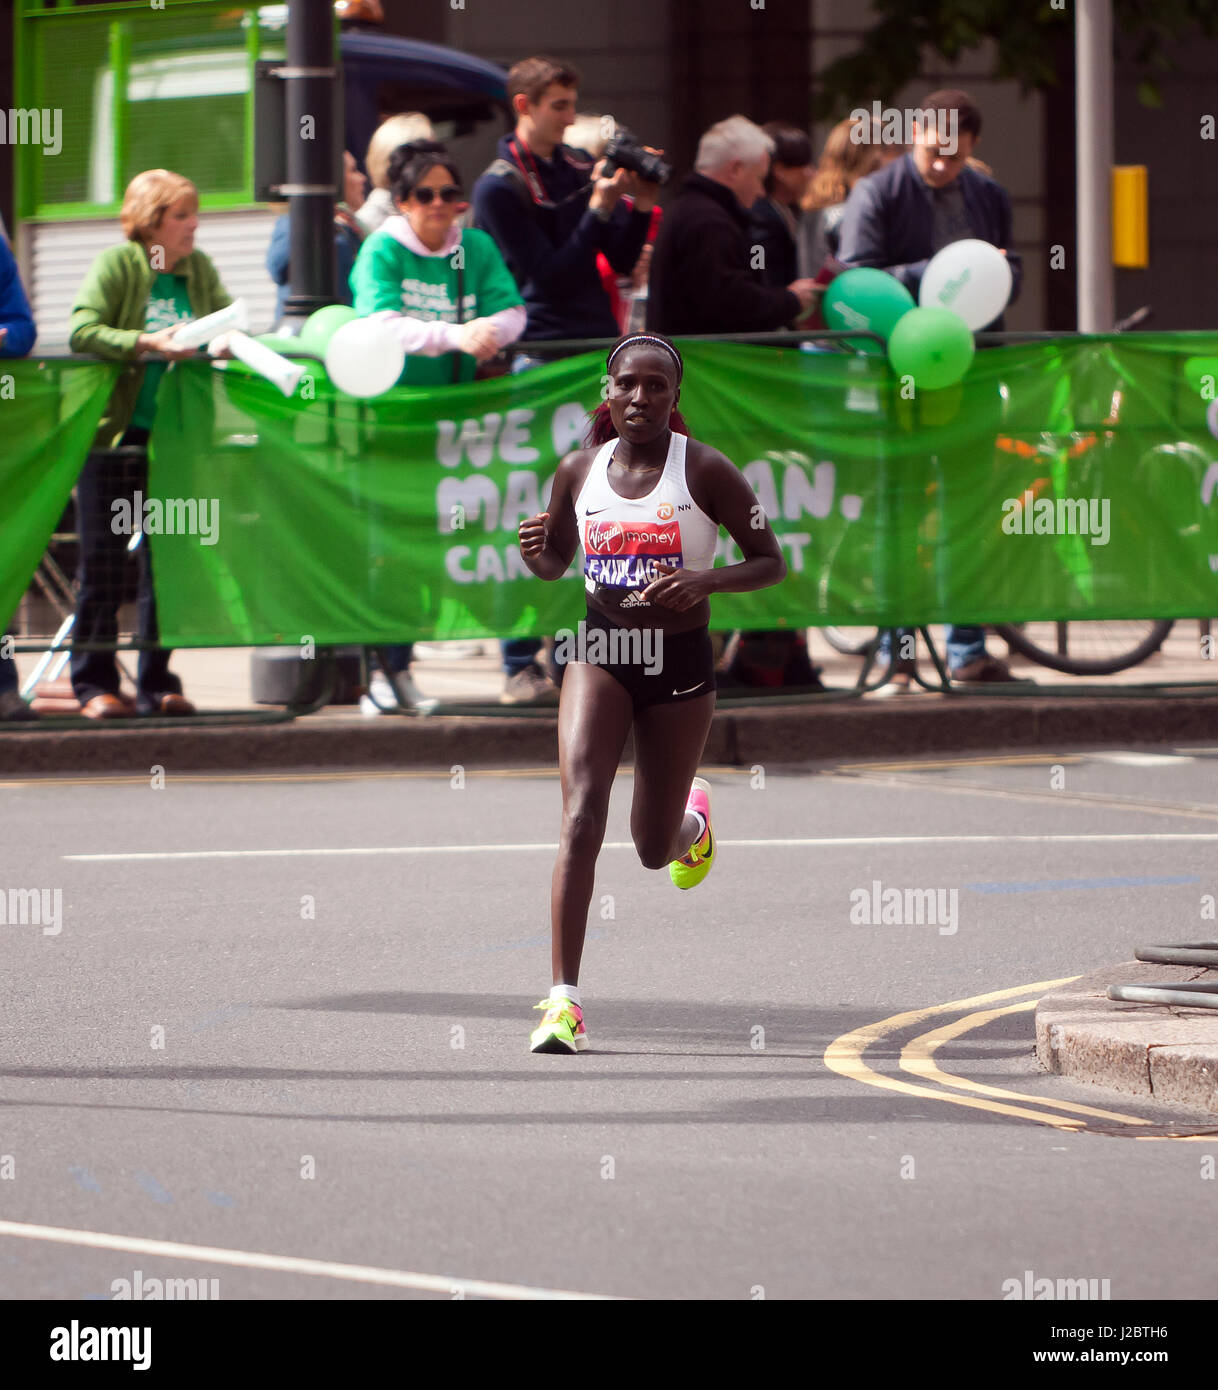 Firenze Kiplagat del Kenya, competere nel 2017 Maratona di Londra. Lei è andato a finire 9 in un tempo di 02:26:25 Foto Stock